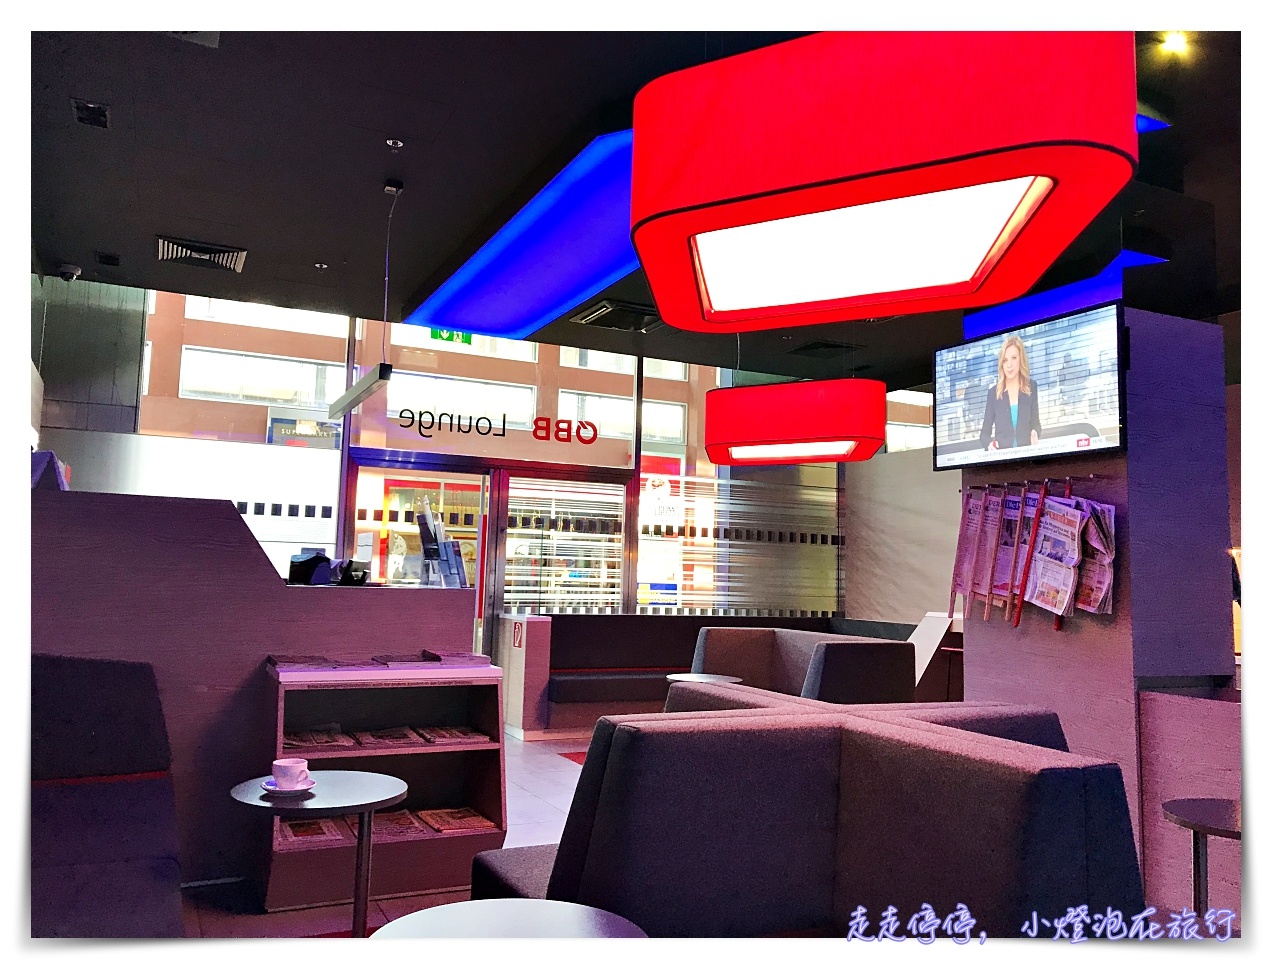 歐洲火車通行證OBB Lounge｜因斯布魯克innsbruck lounge火車站貴賓室使用紀錄～一等車票1st class，免費使用奧地利、德國境內火車站貴賓室～